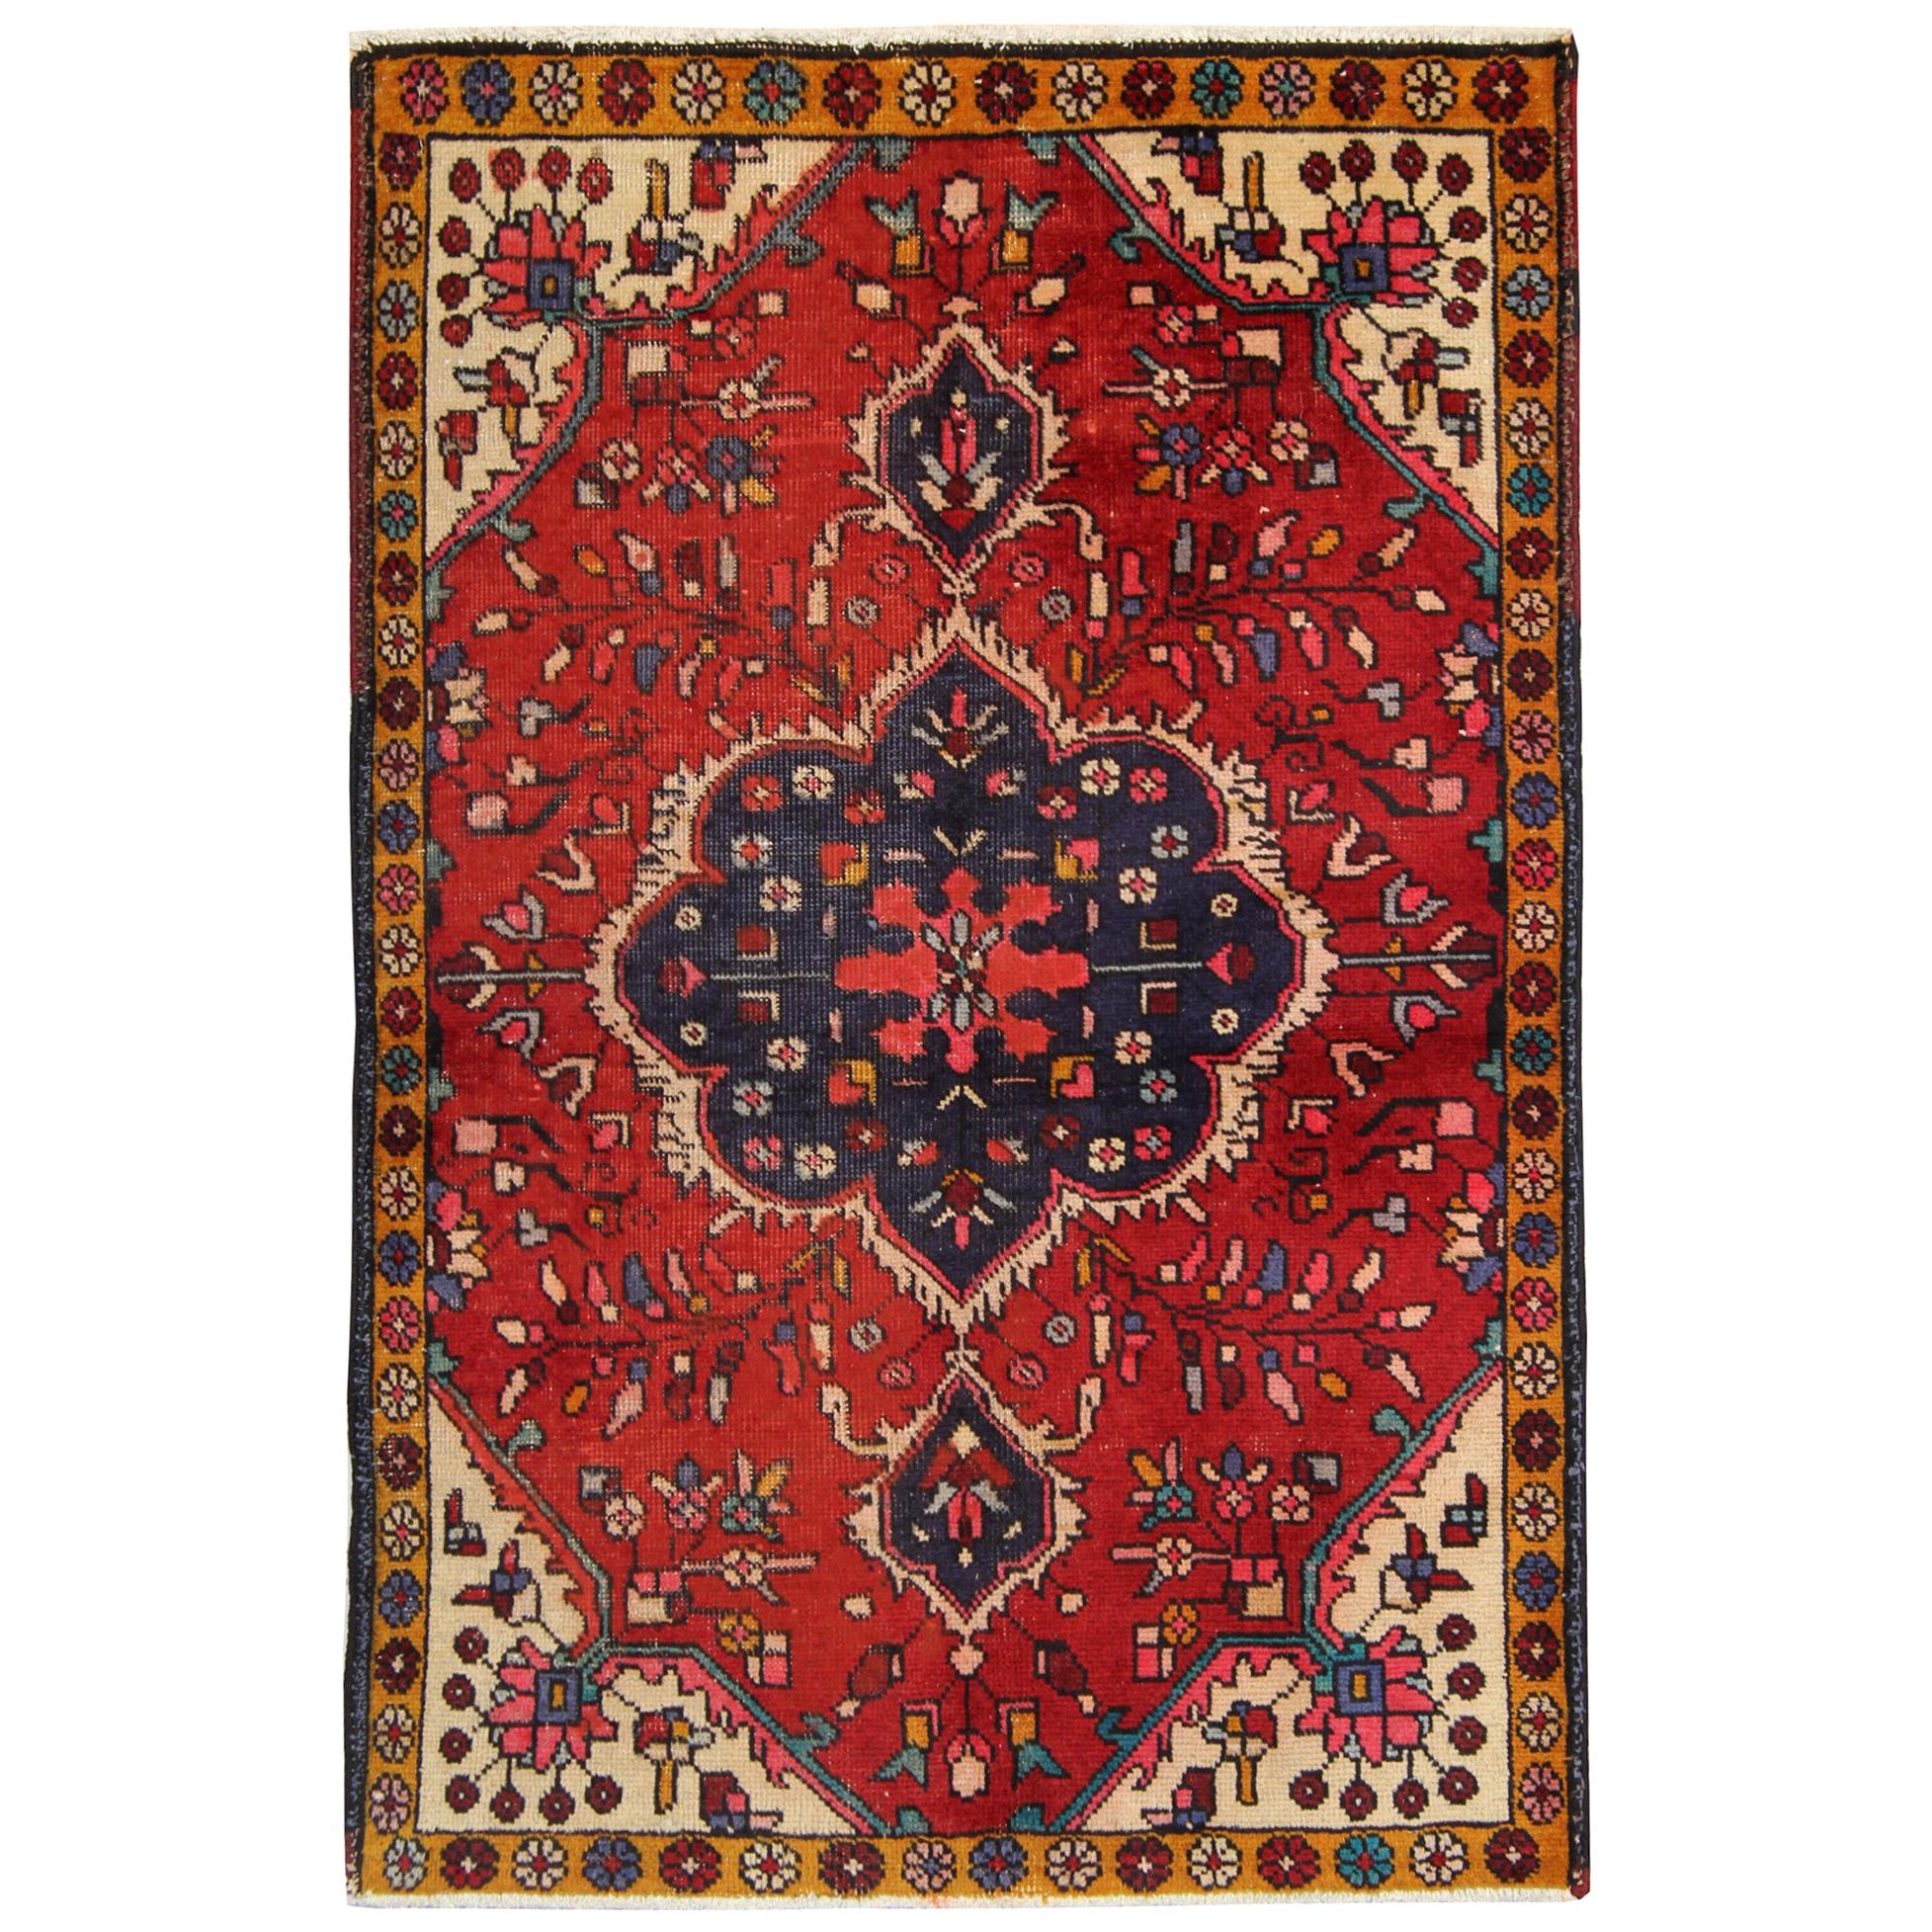 Vintage Rugs Handmade Carpet Oriental Rug Red Wool Area Rug For Sale